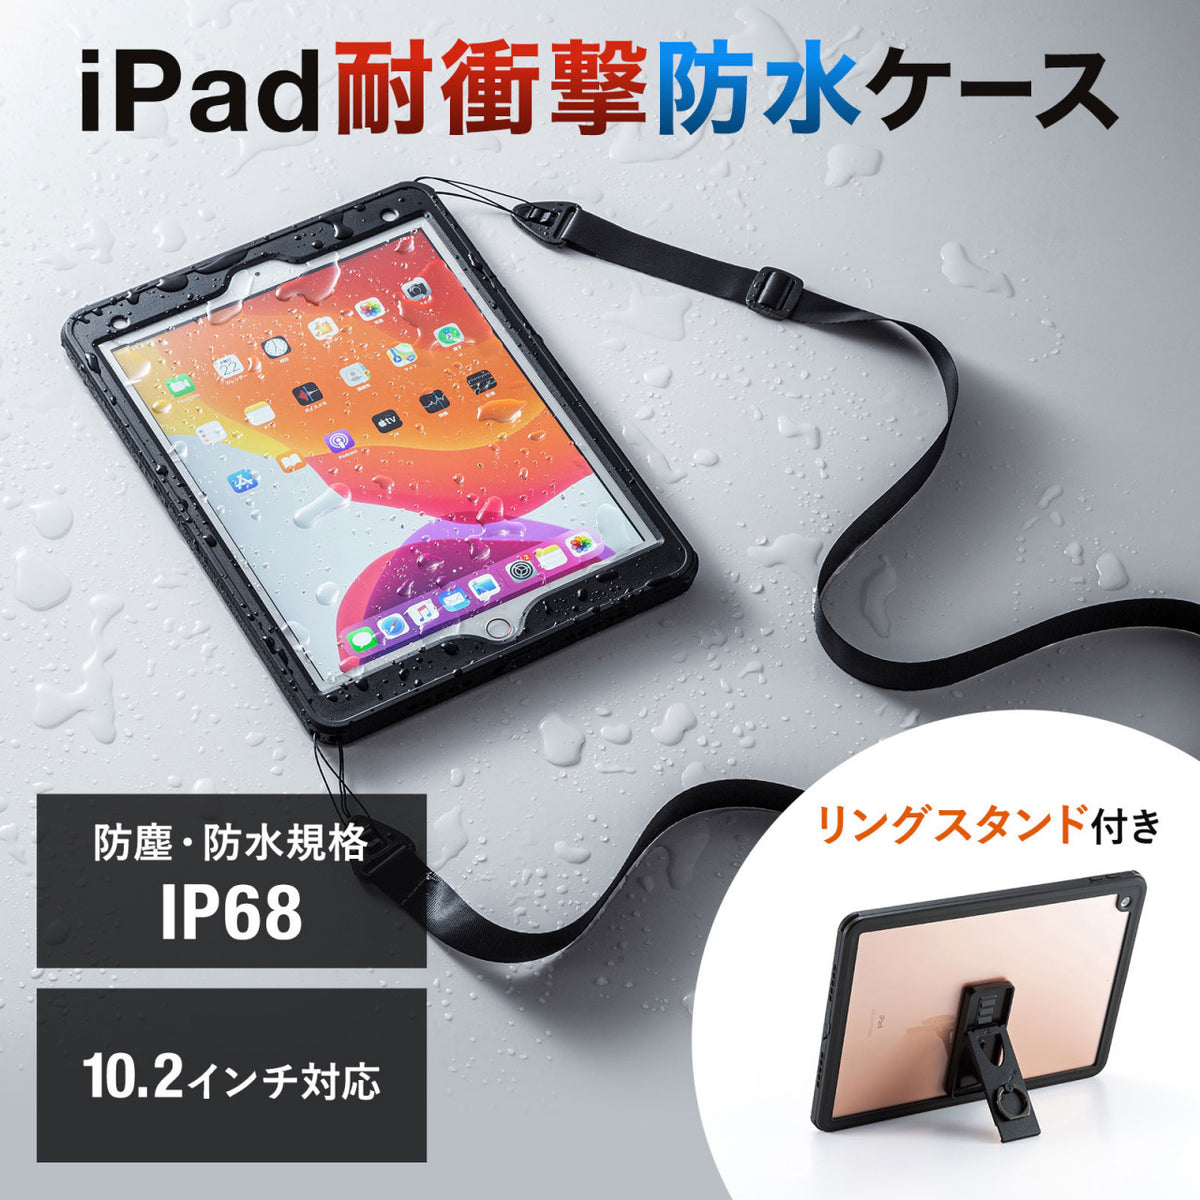 iPad カバー付き【お値引き可能】-